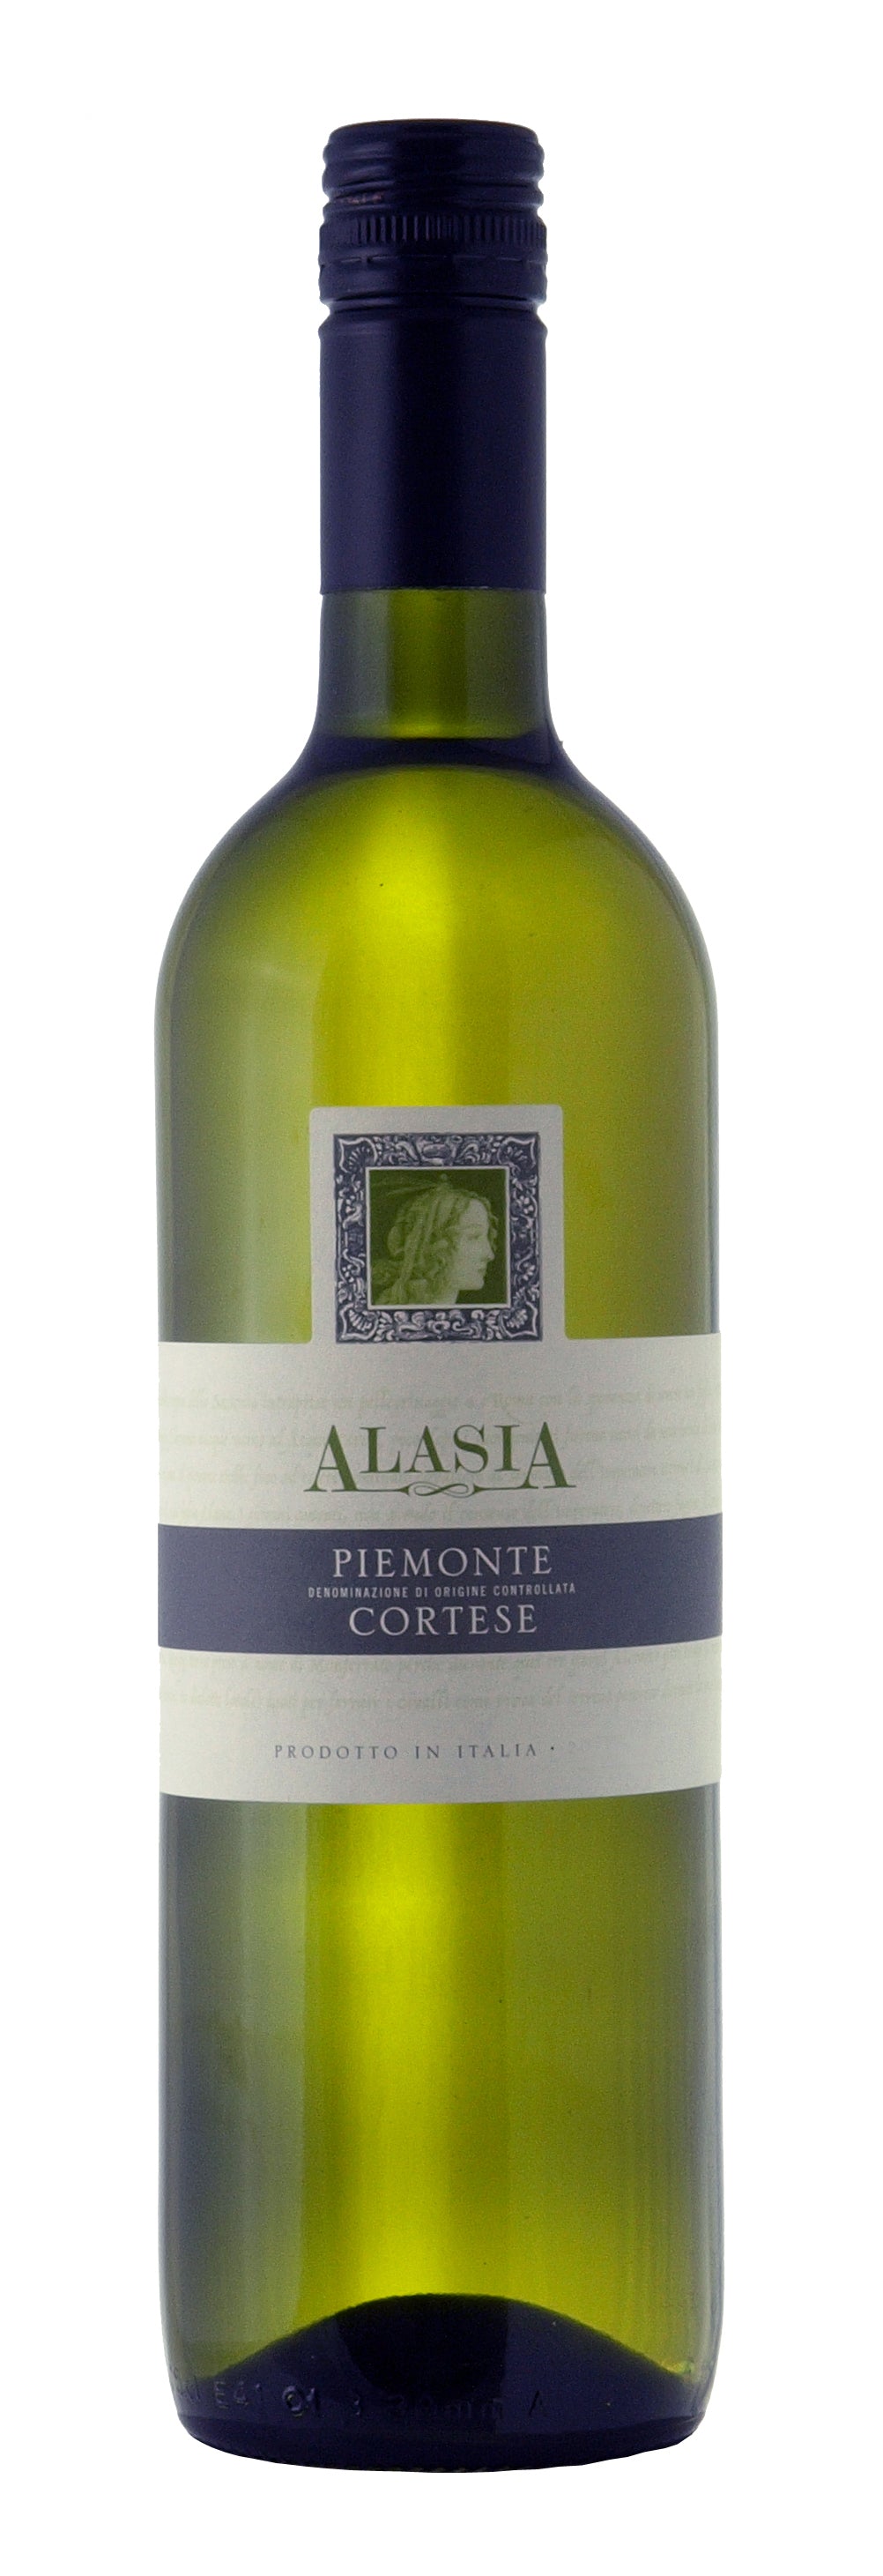 Alasia Piemonte Cortese